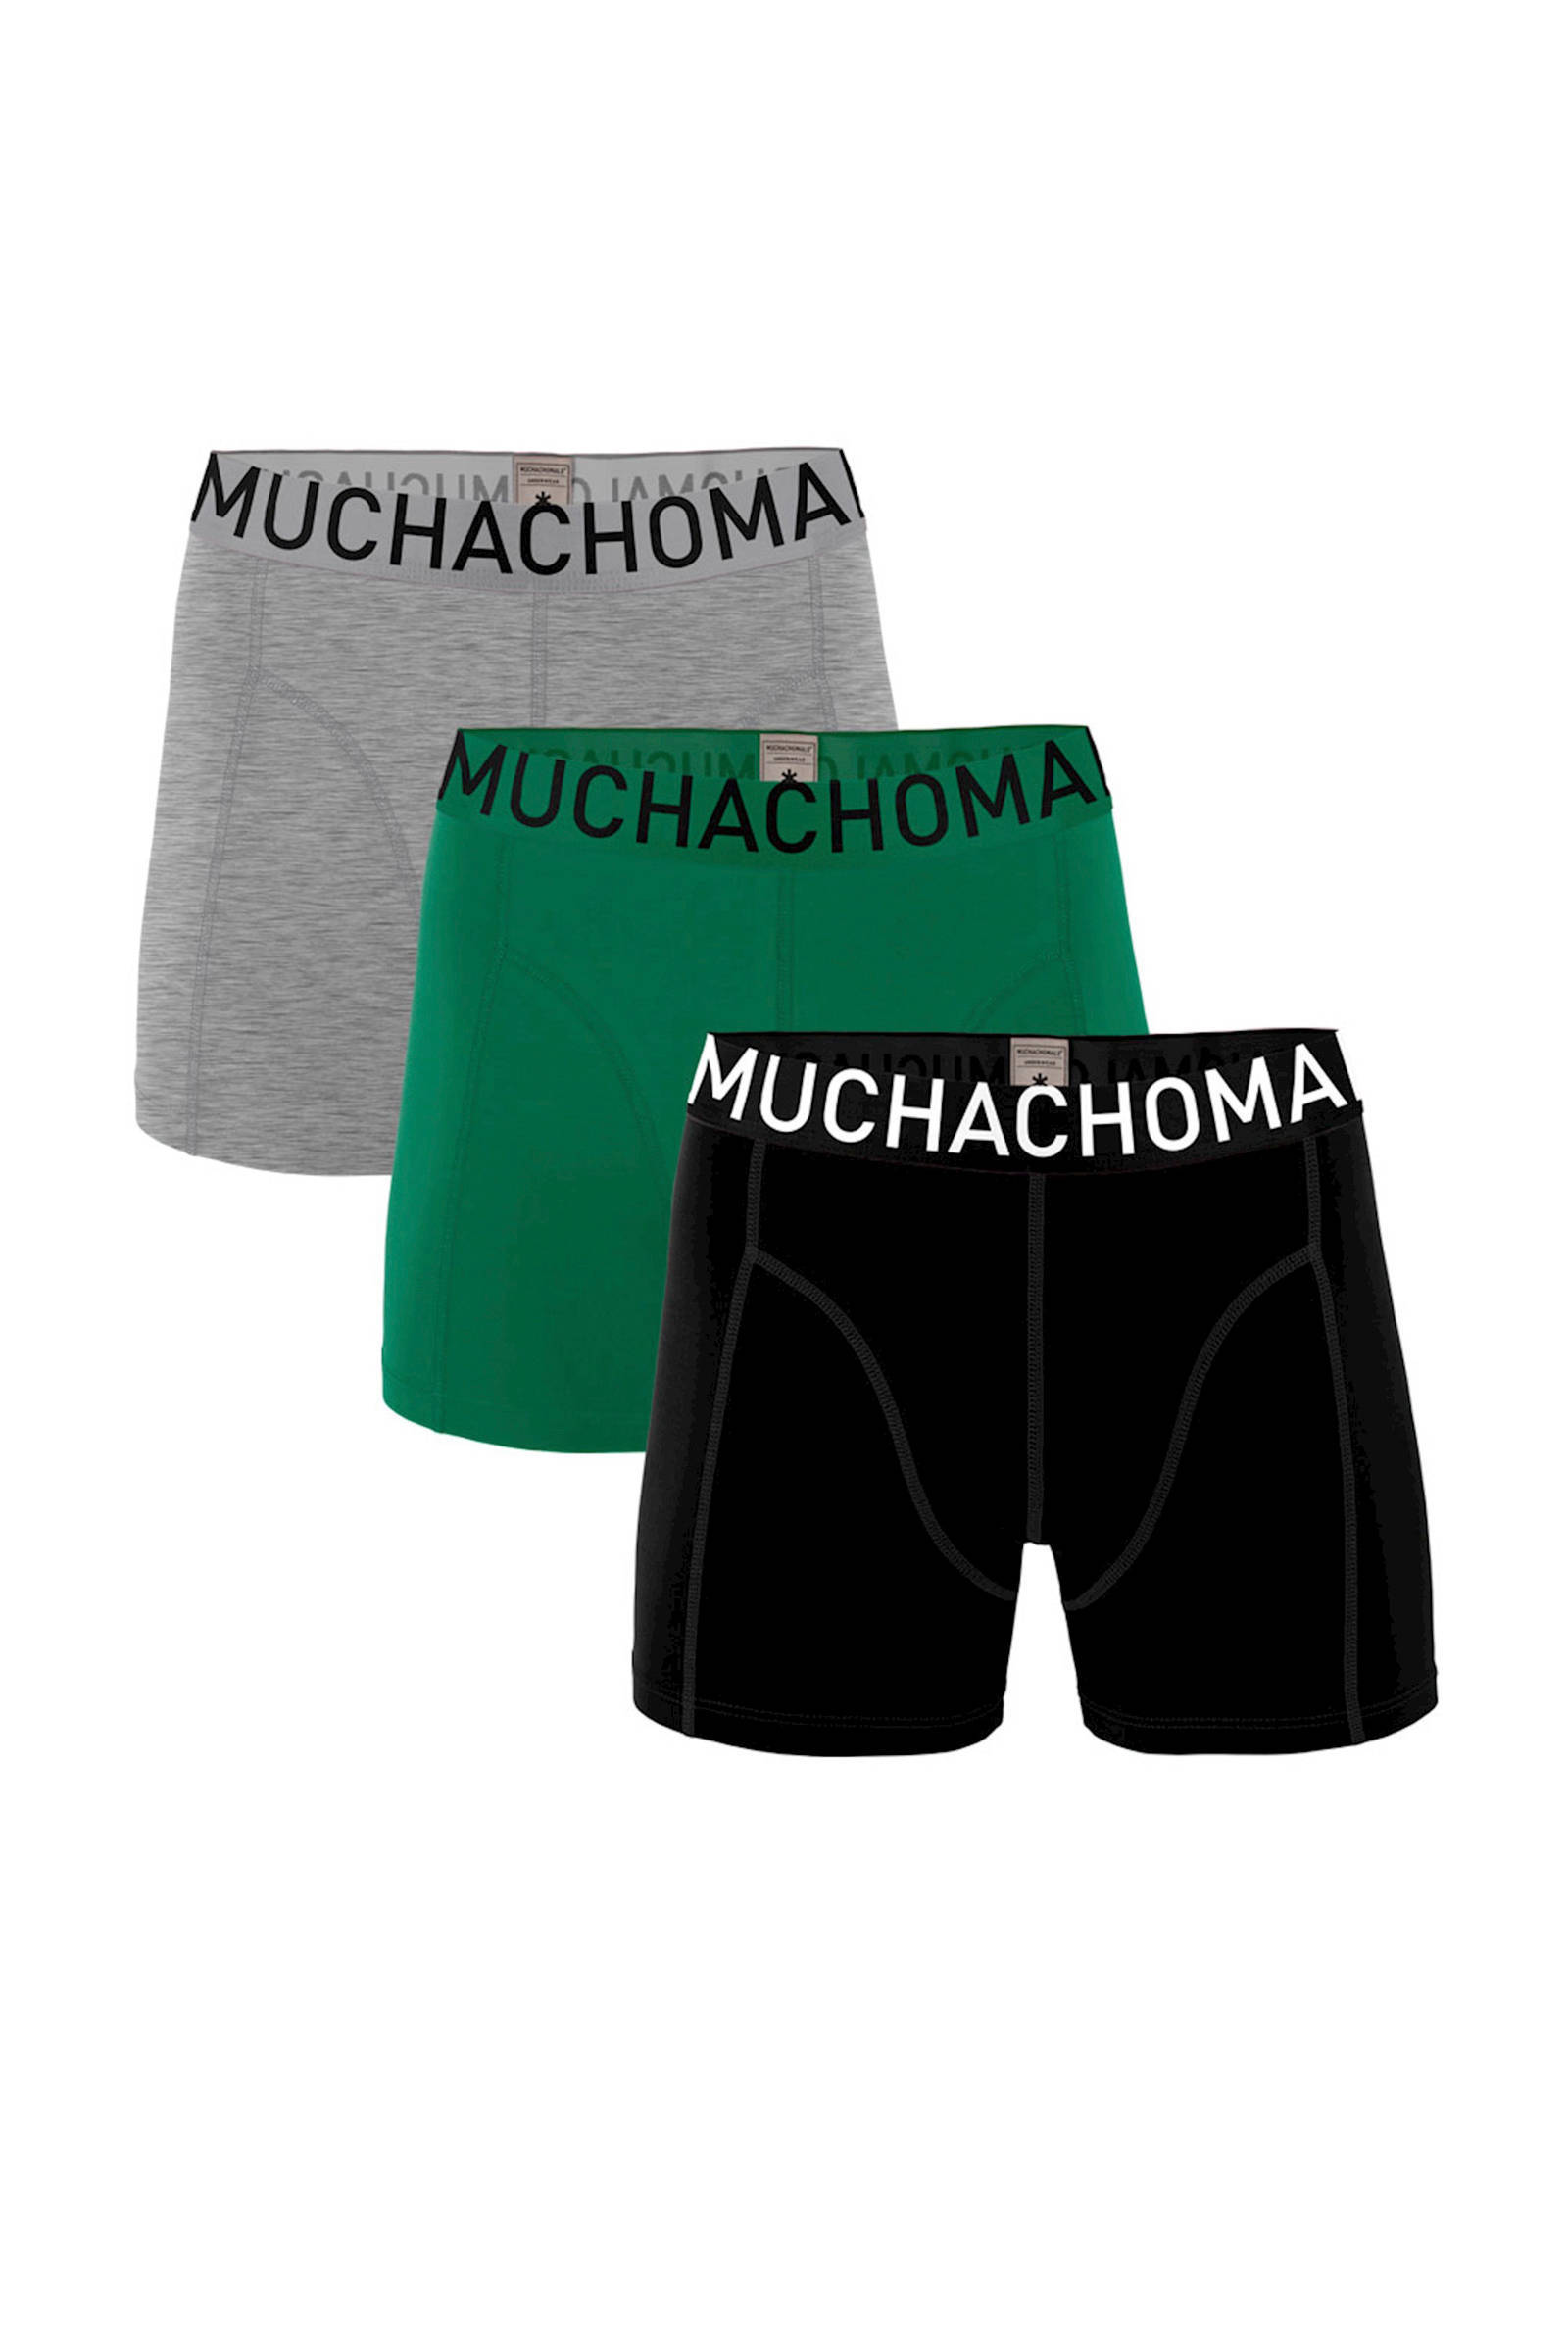 Muchachomalo Boxershorts Solid 3 Pack , Groen, Heren online kopen